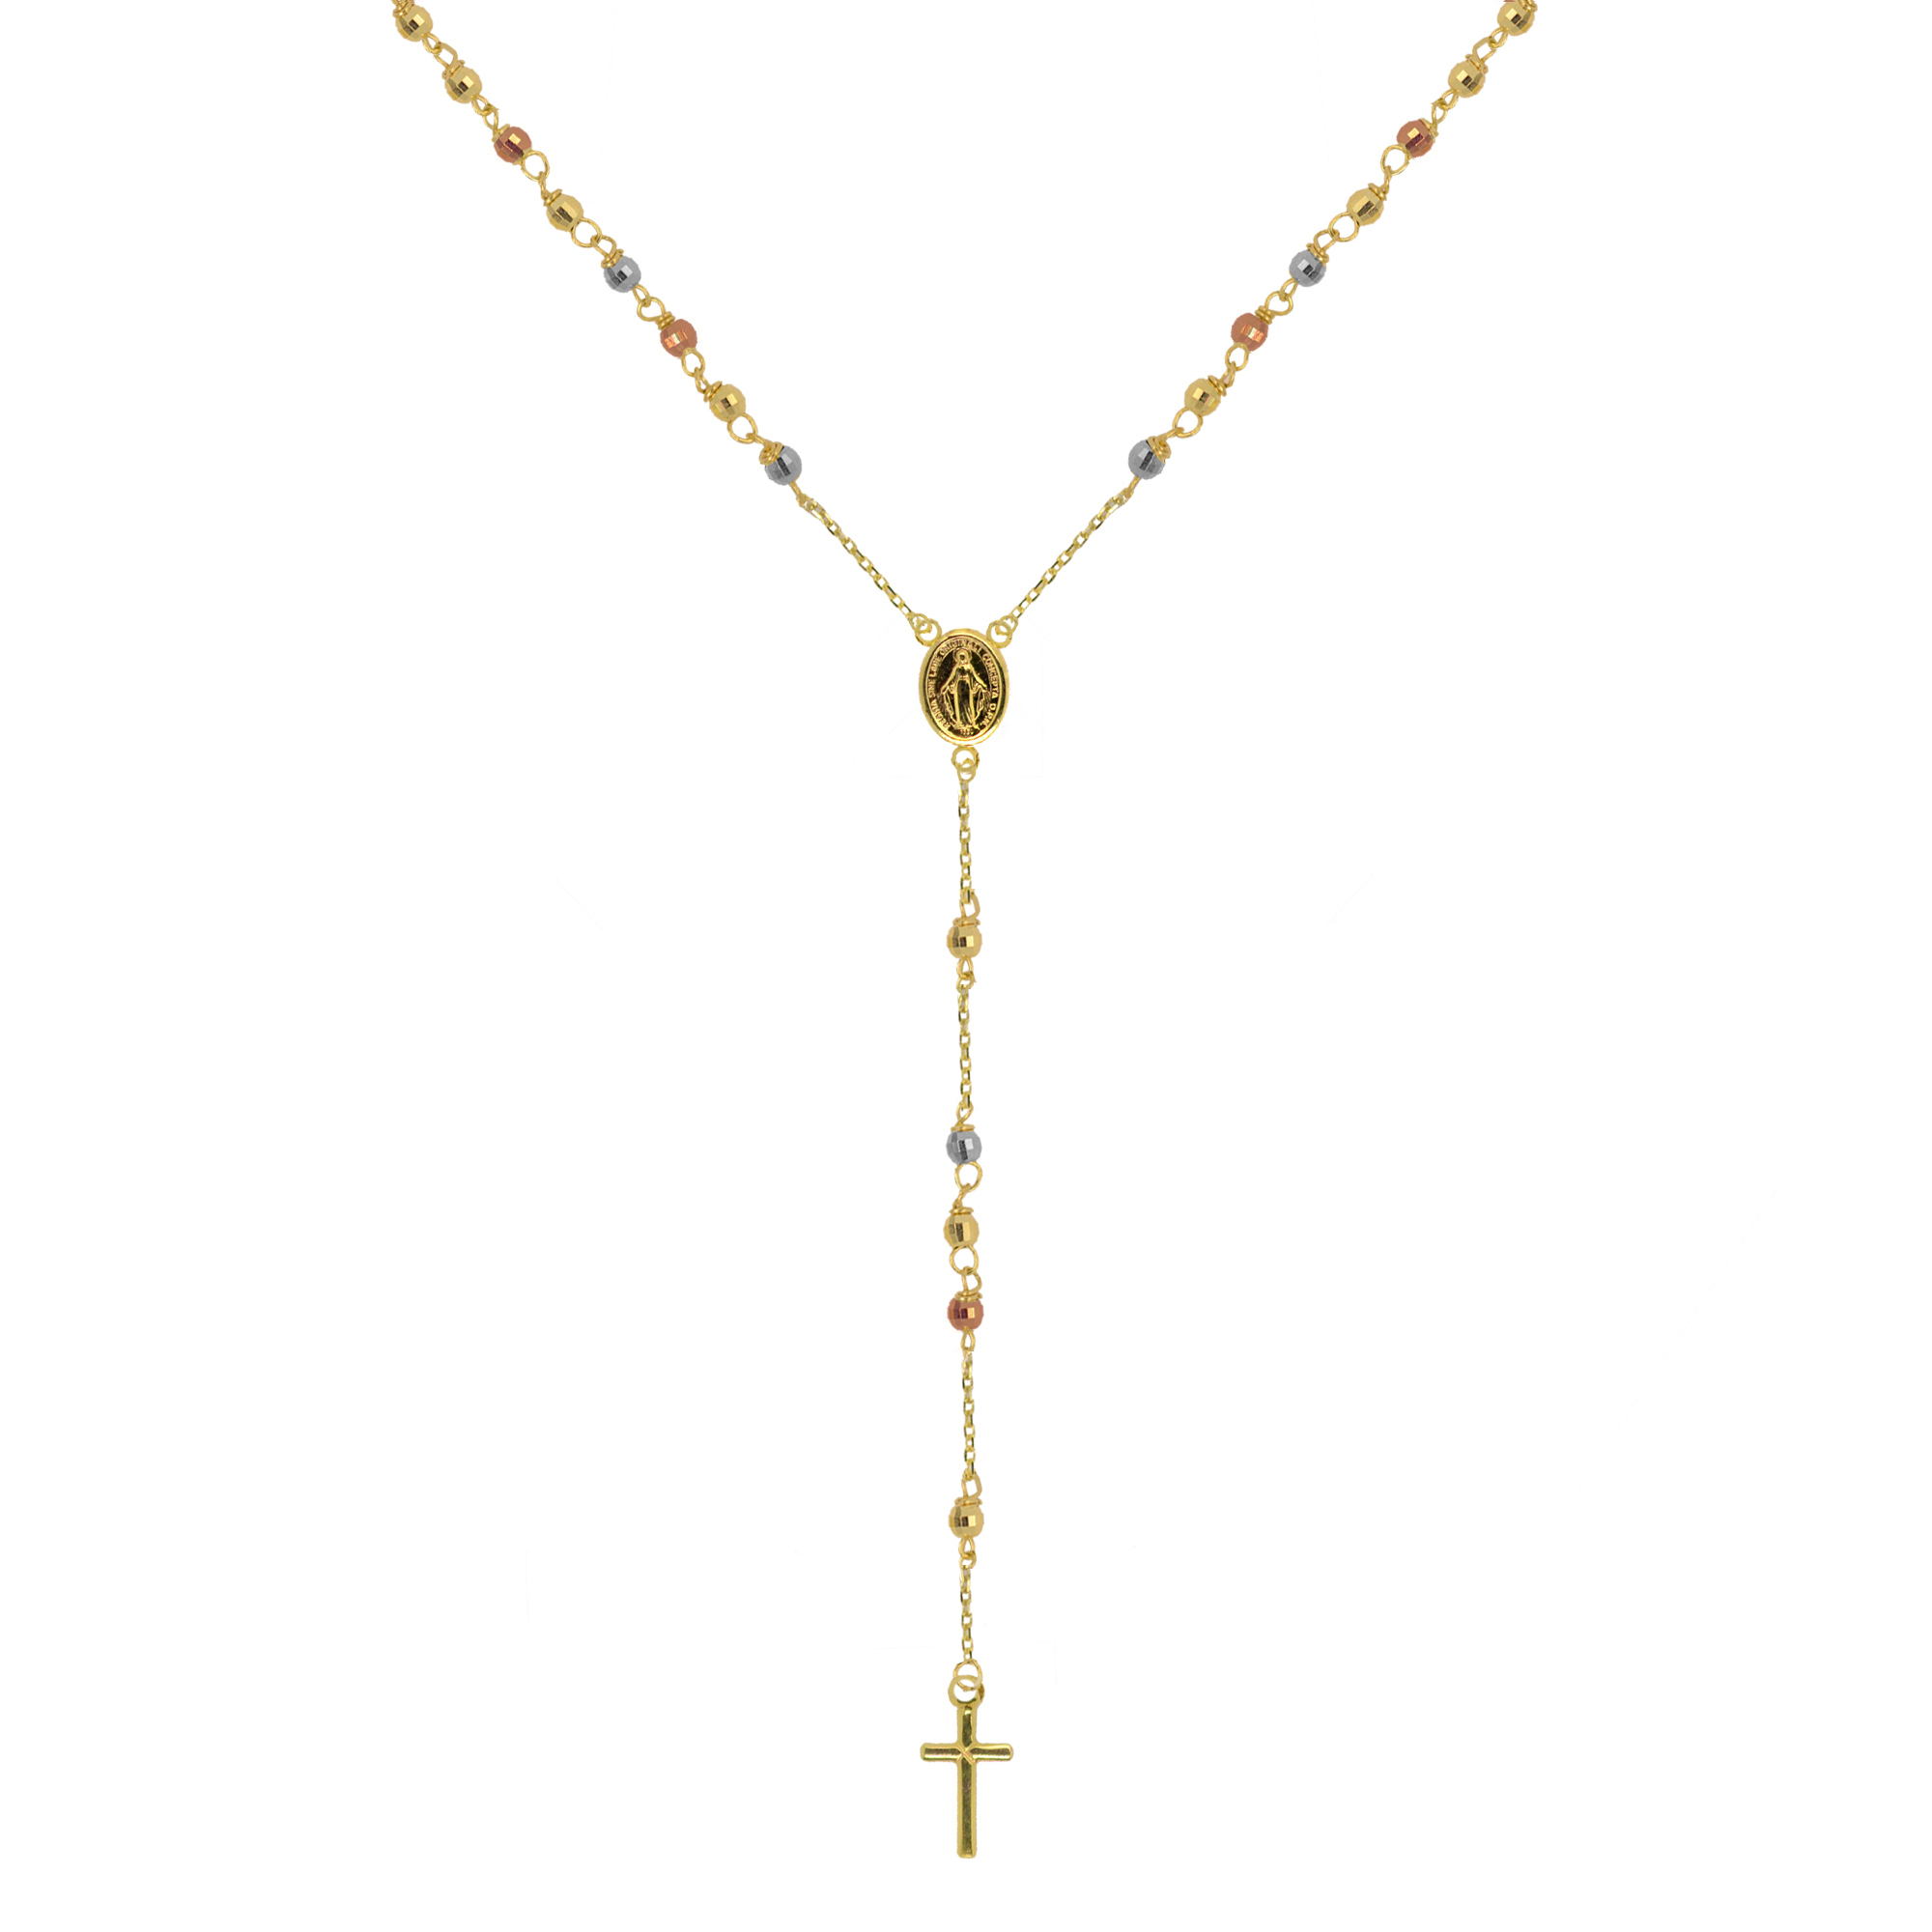 Evolution Group Zlatý 14 karátový náhrdelník růženec s křížem a medailonkem s Pannou Marií RŽ07 multi